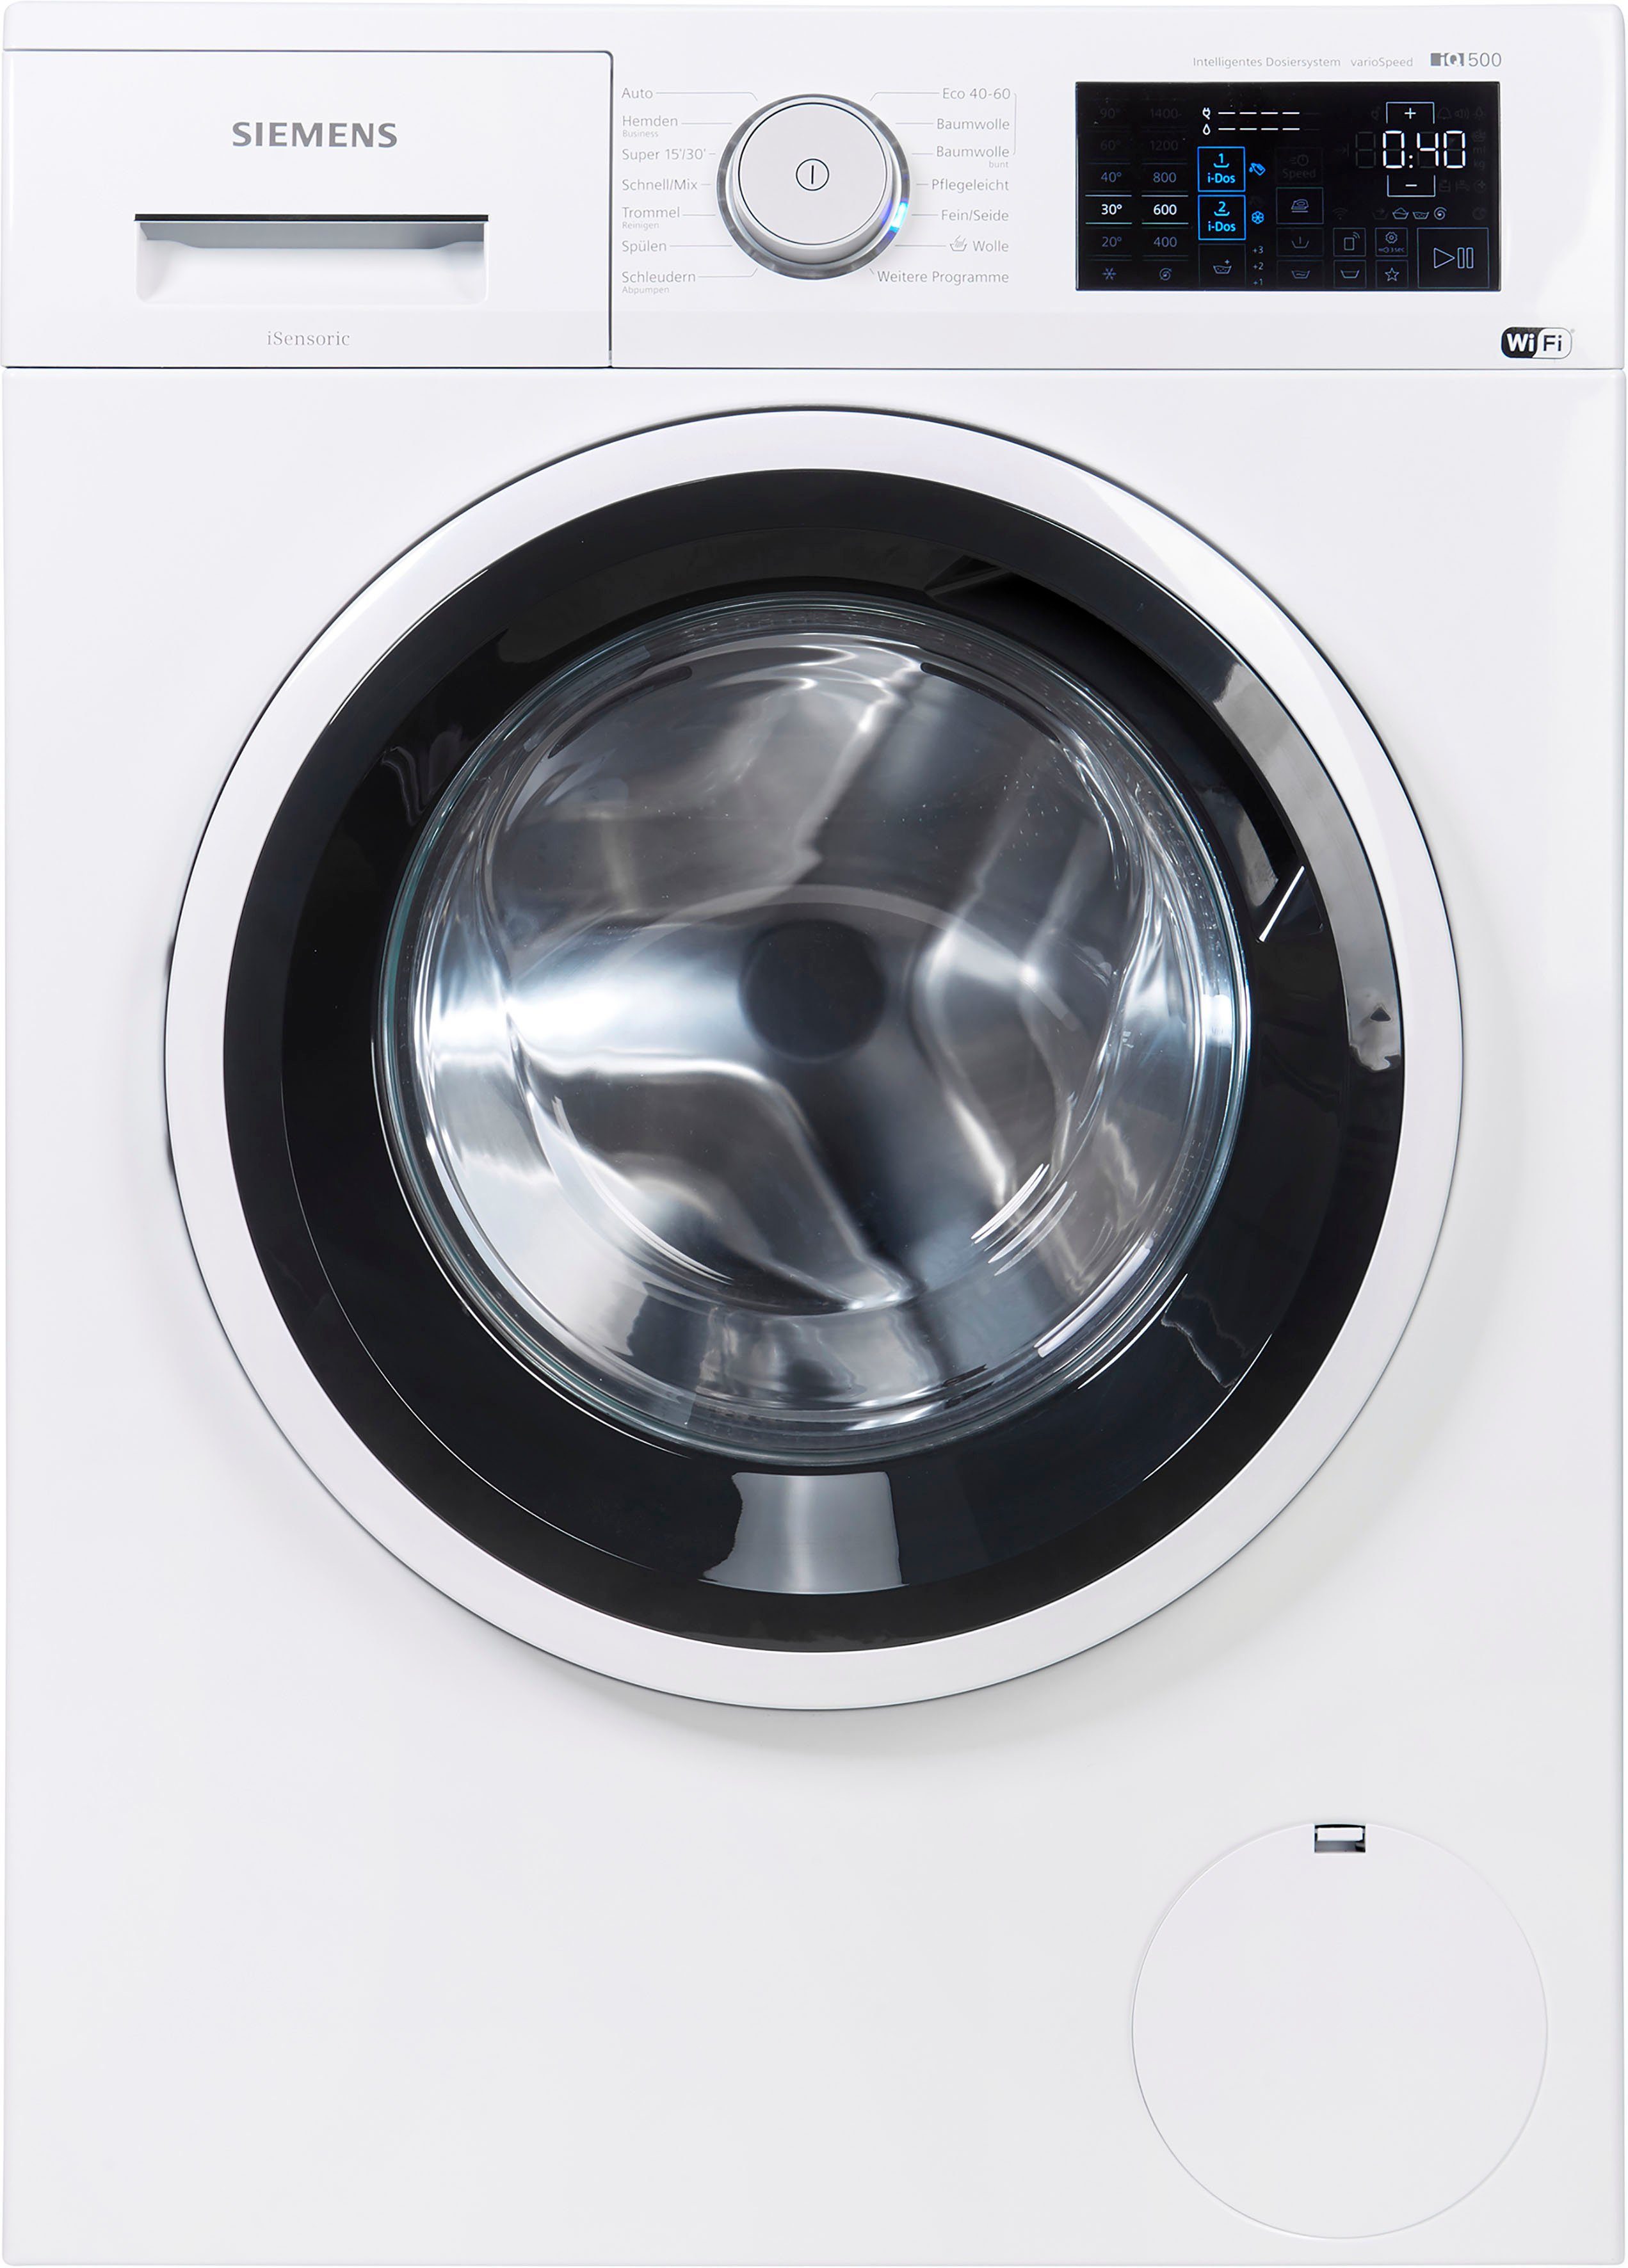 SIEMENS Waschmaschine iQ500 WM14UP40, 9 kg, 1400 U/min